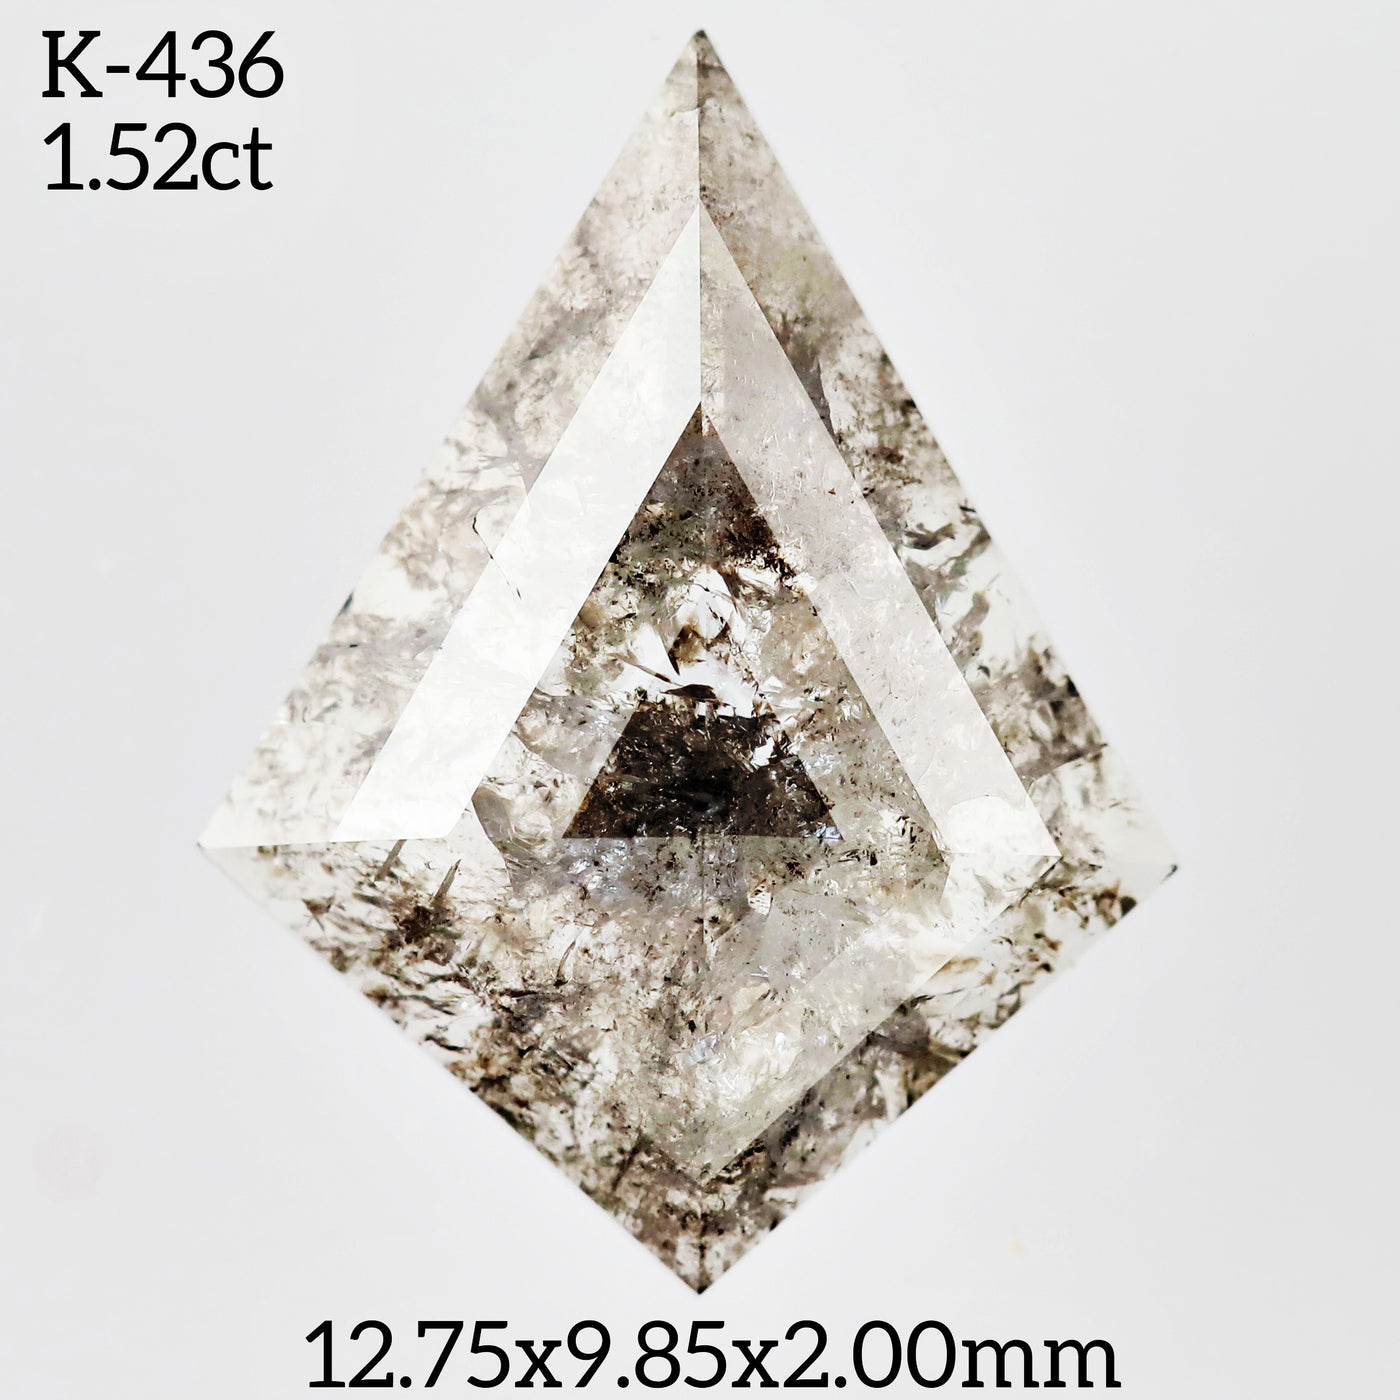 K436 - Salt and pepper kite diamond